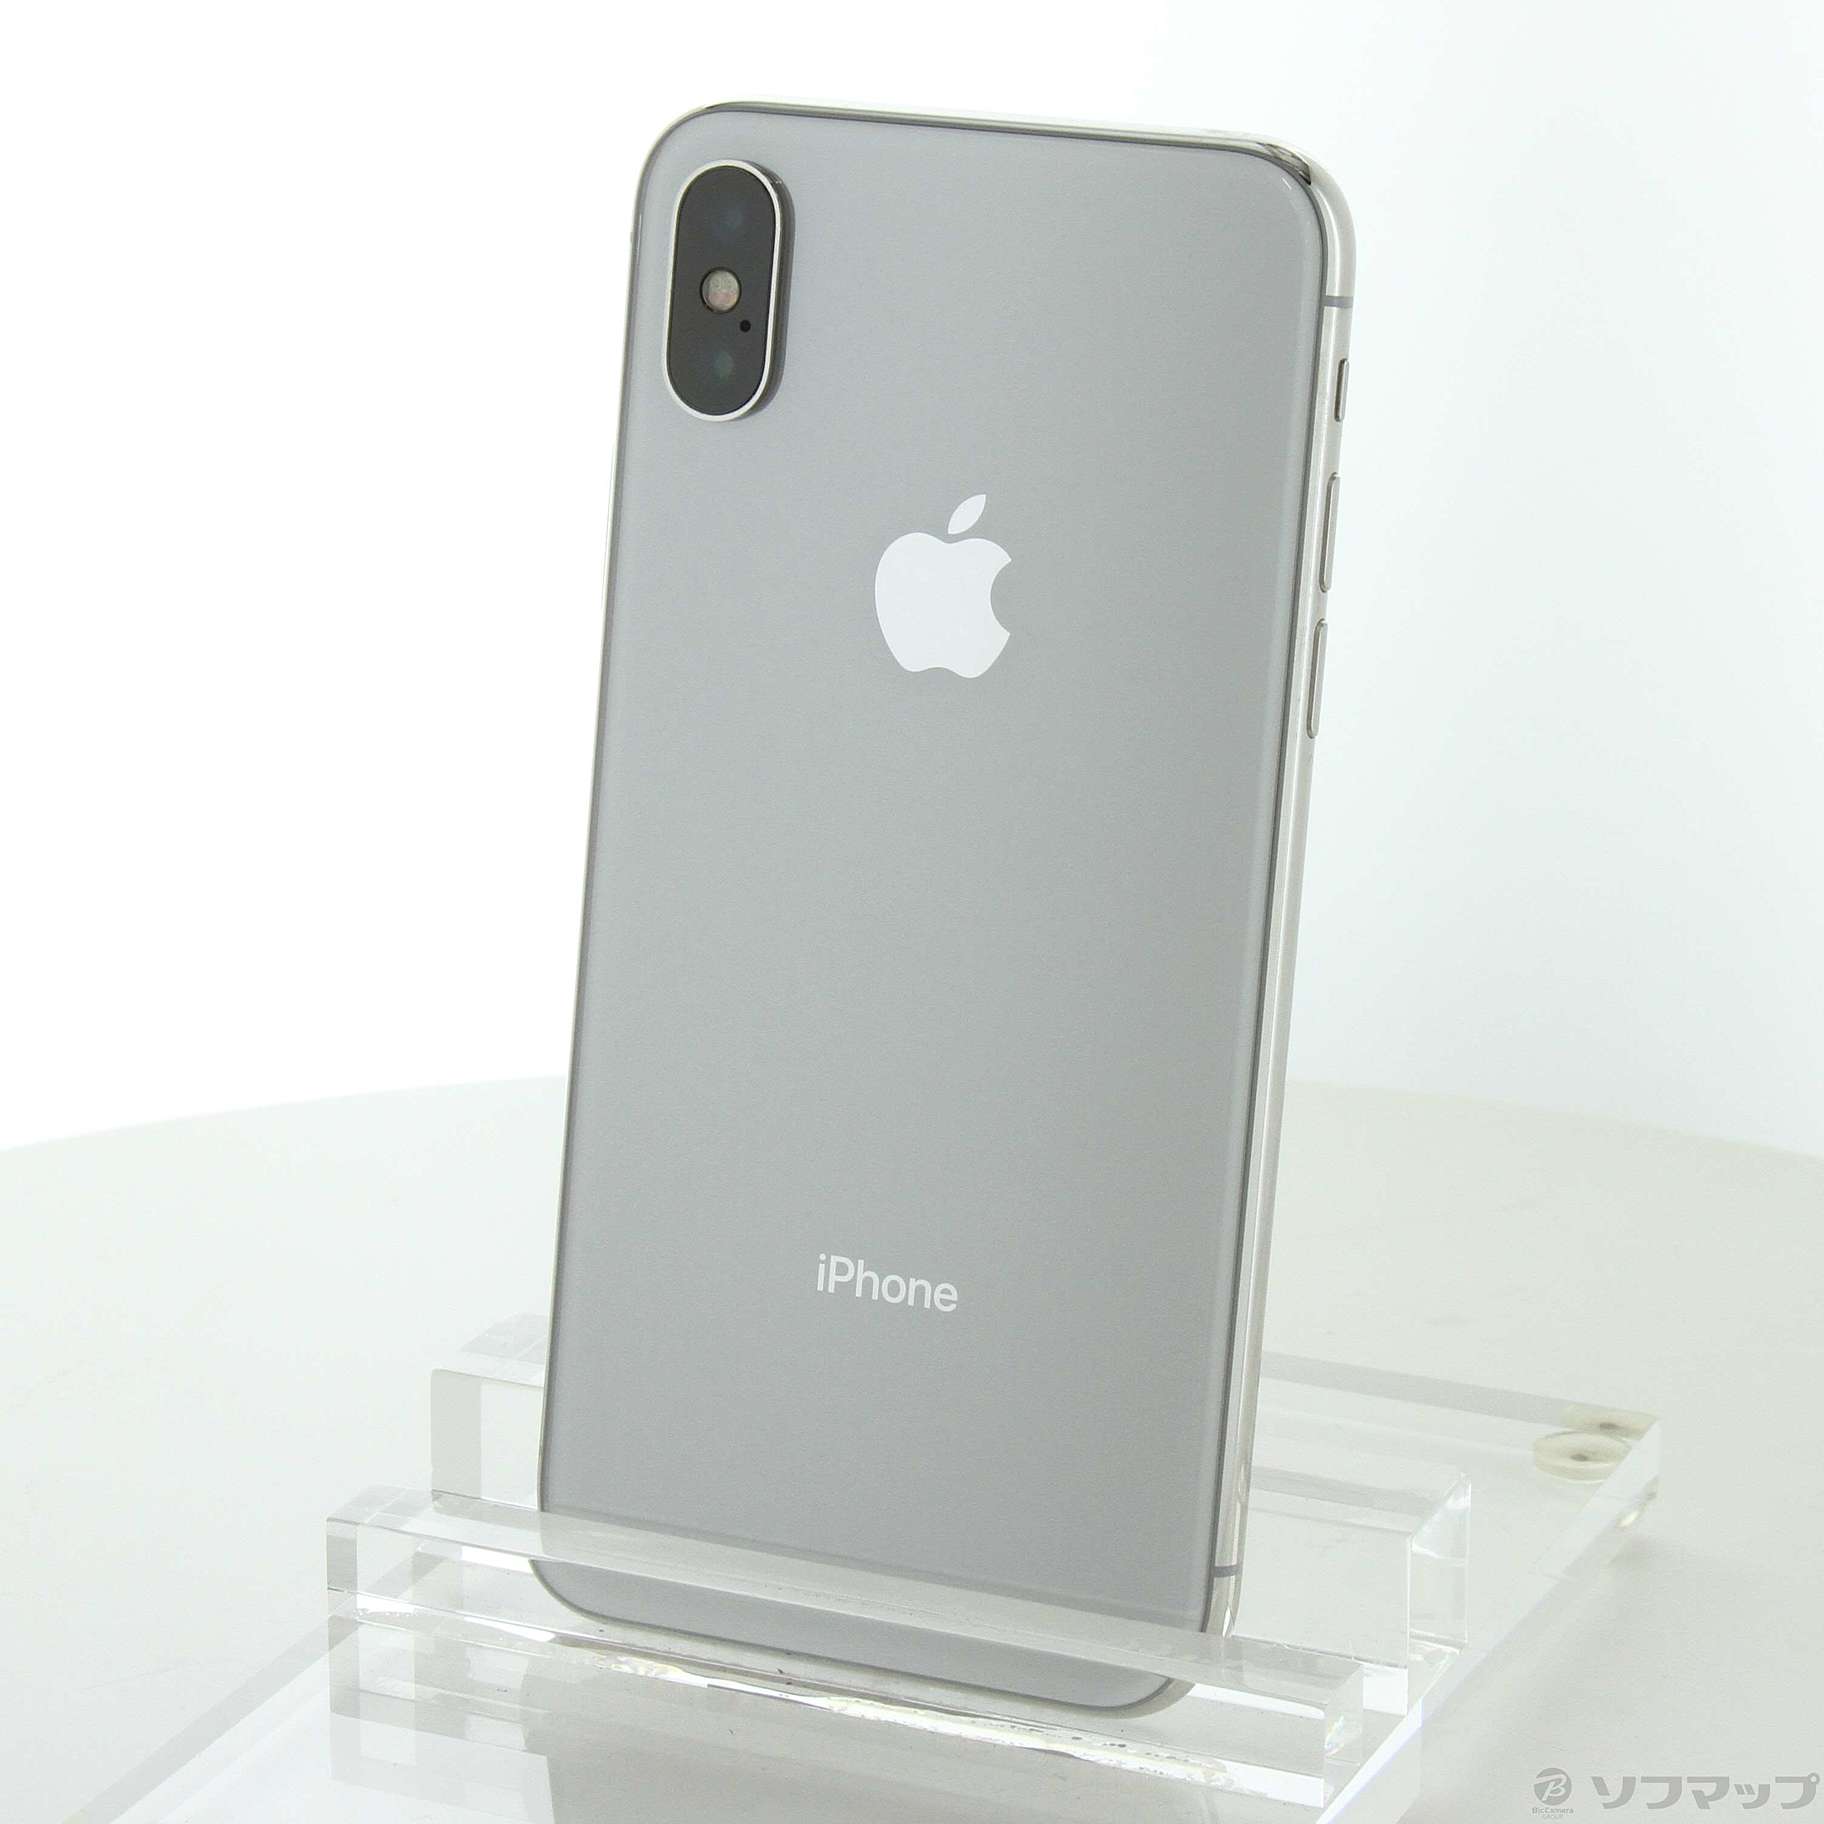 iPhoneX 256GB Silver